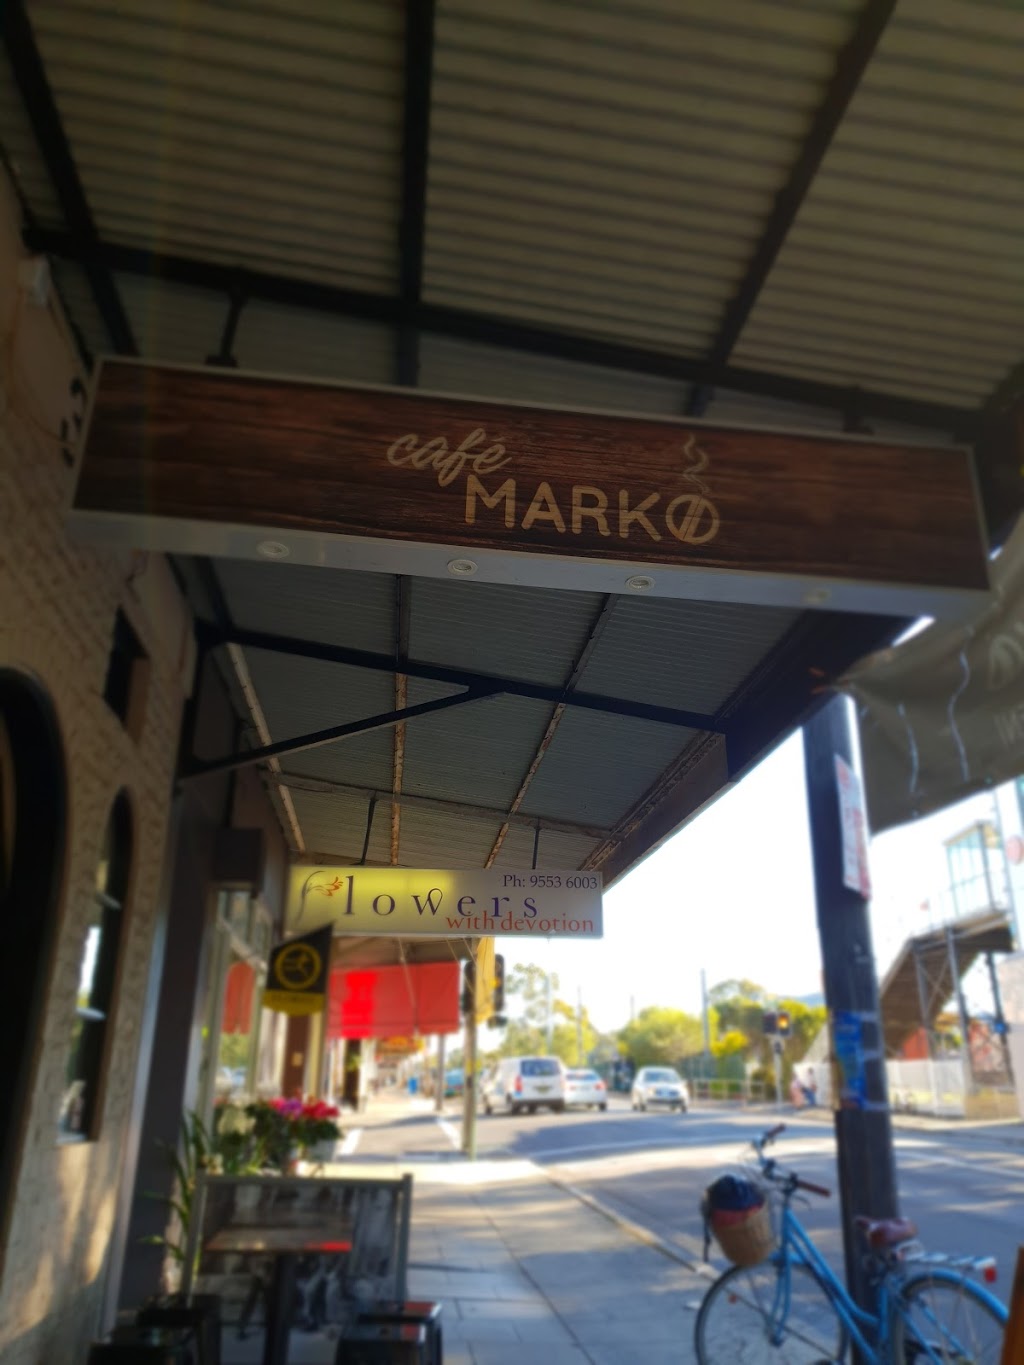 Café Marko | cafe | 304 Railway Parade, Carlton NSW 2218, Australia | 0455655266 OR +61 455 655 266